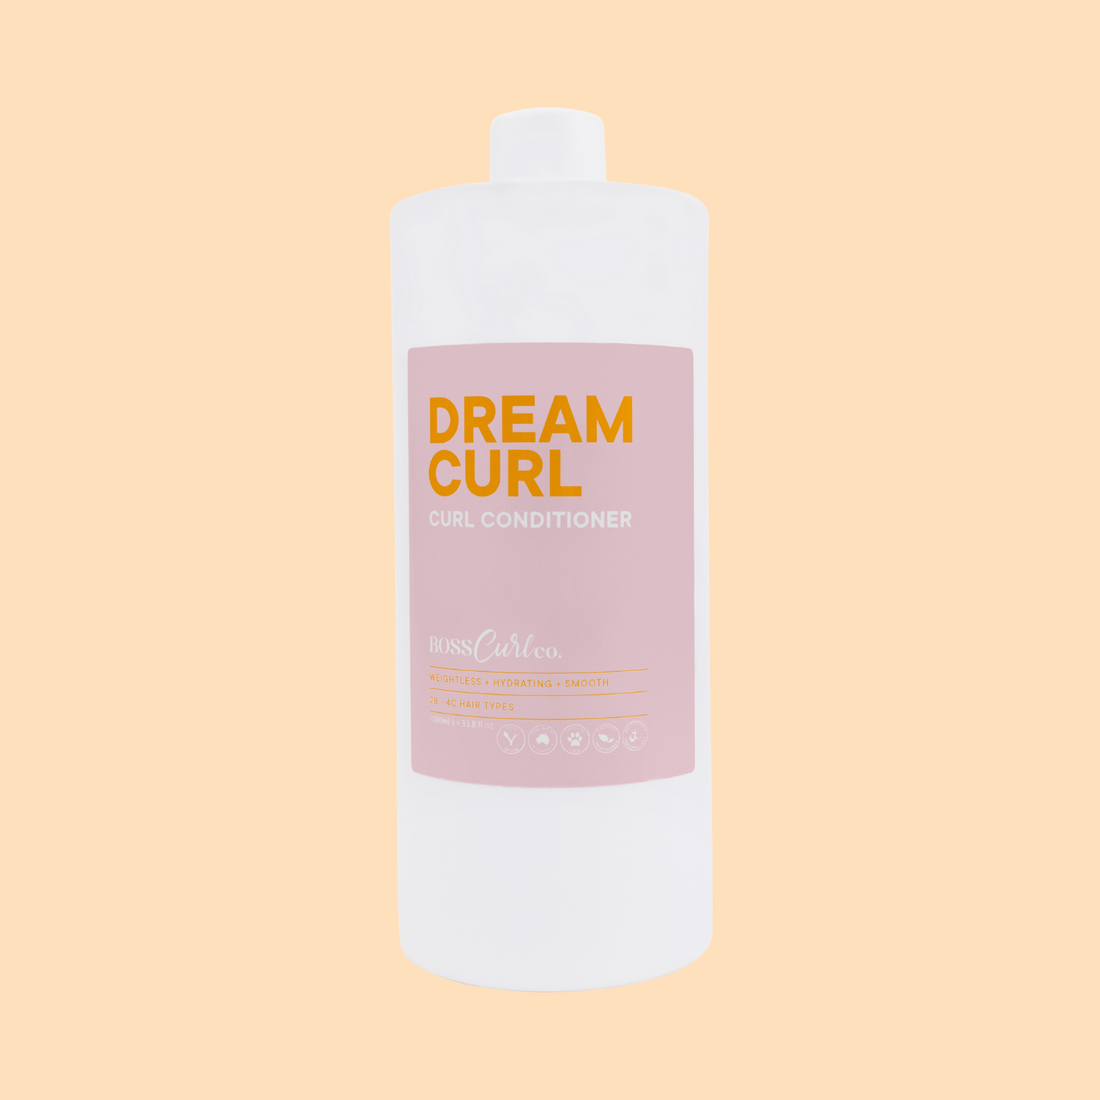 Dream Curl Conditioner